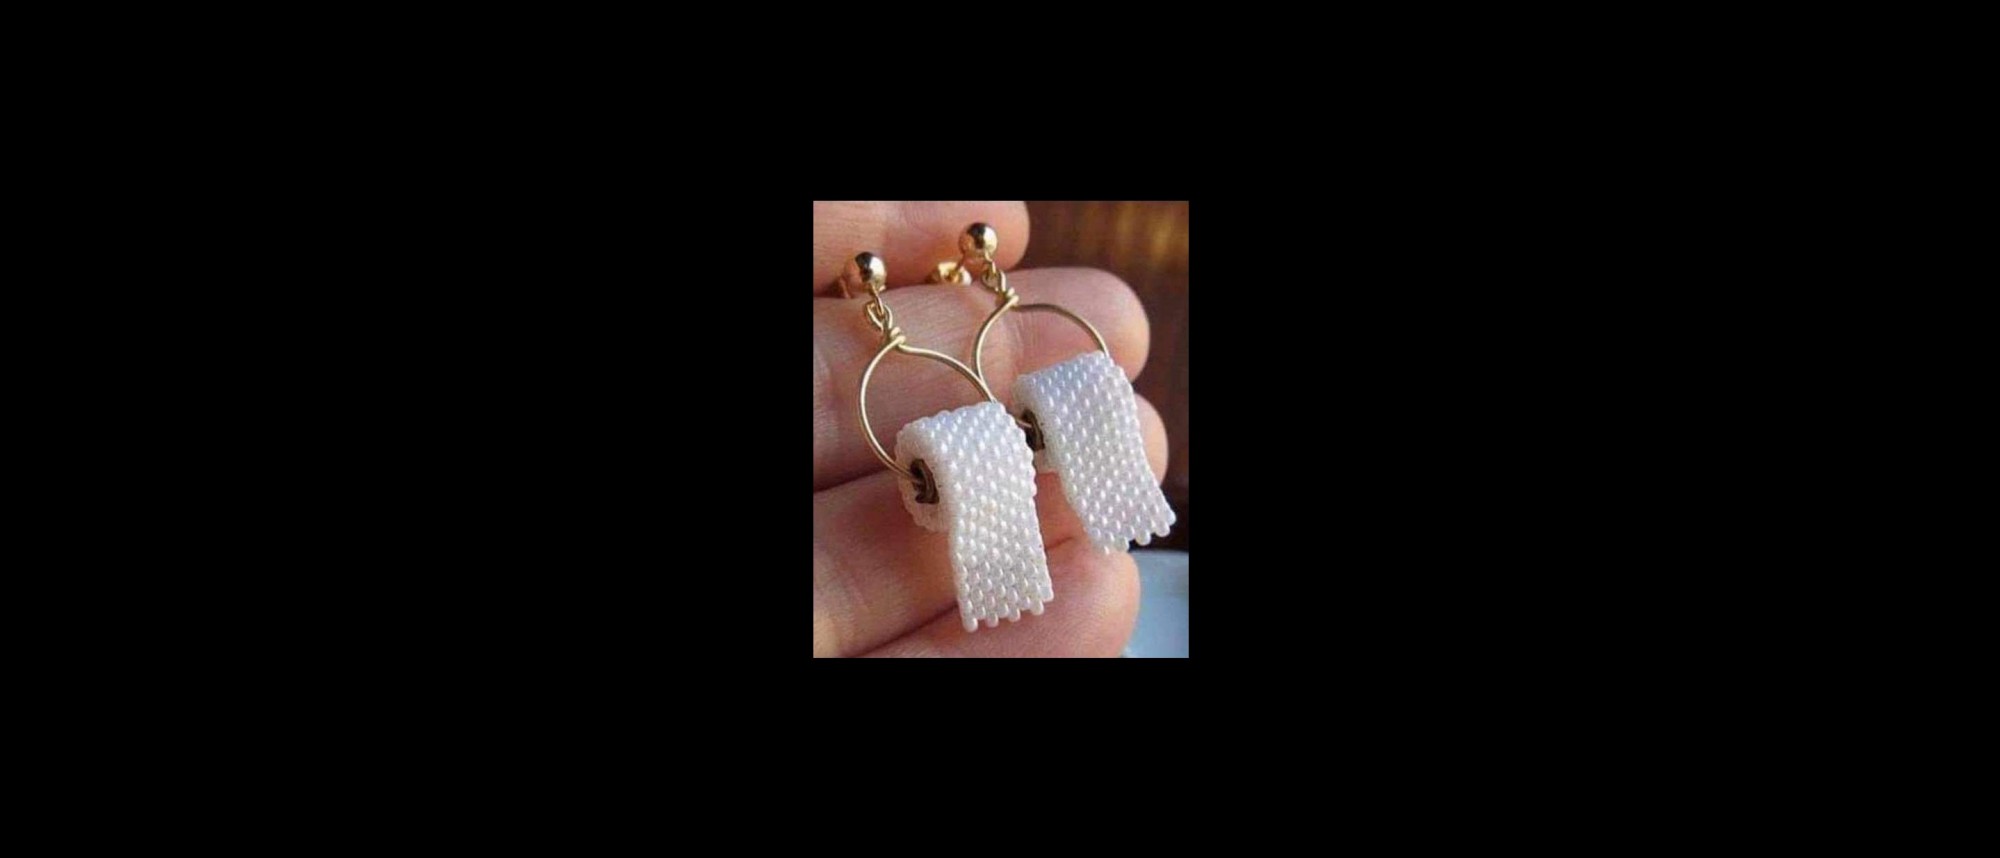 Ohrringe aus goldfarbenen Ringen und einer Rolle Toilettenpapier aus kleinen weißen Perlen gefertigt.